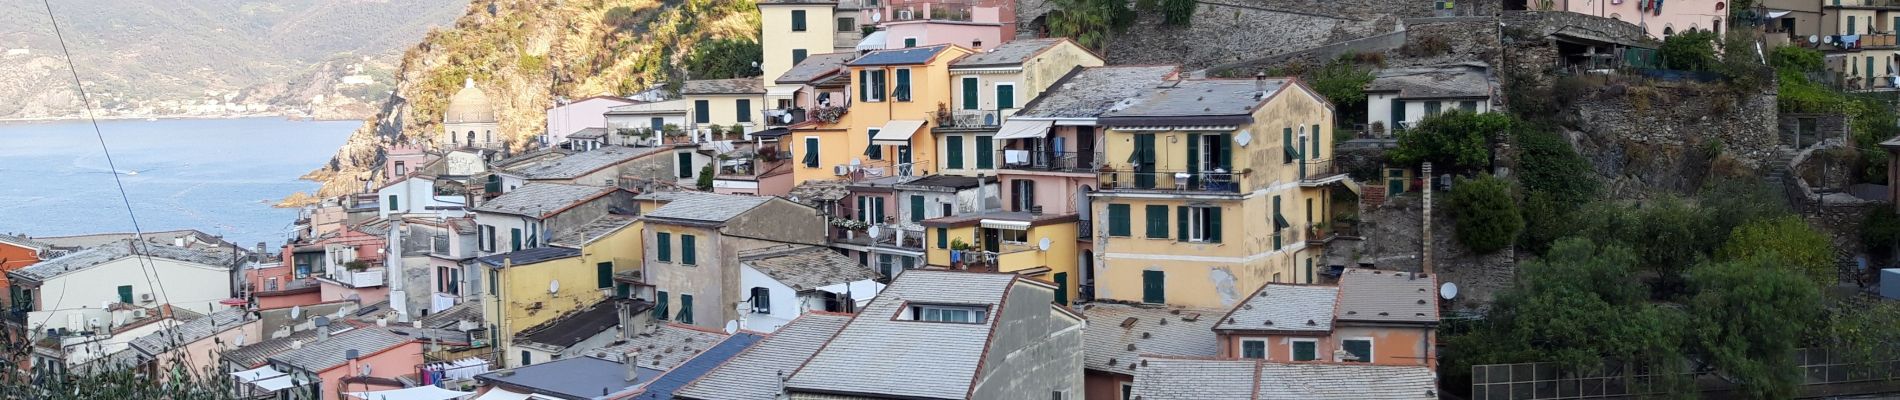 Tour Wandern Vernazza - Rando cinq Terre 4ème jour Vernazza-Riomaggiore - Photo